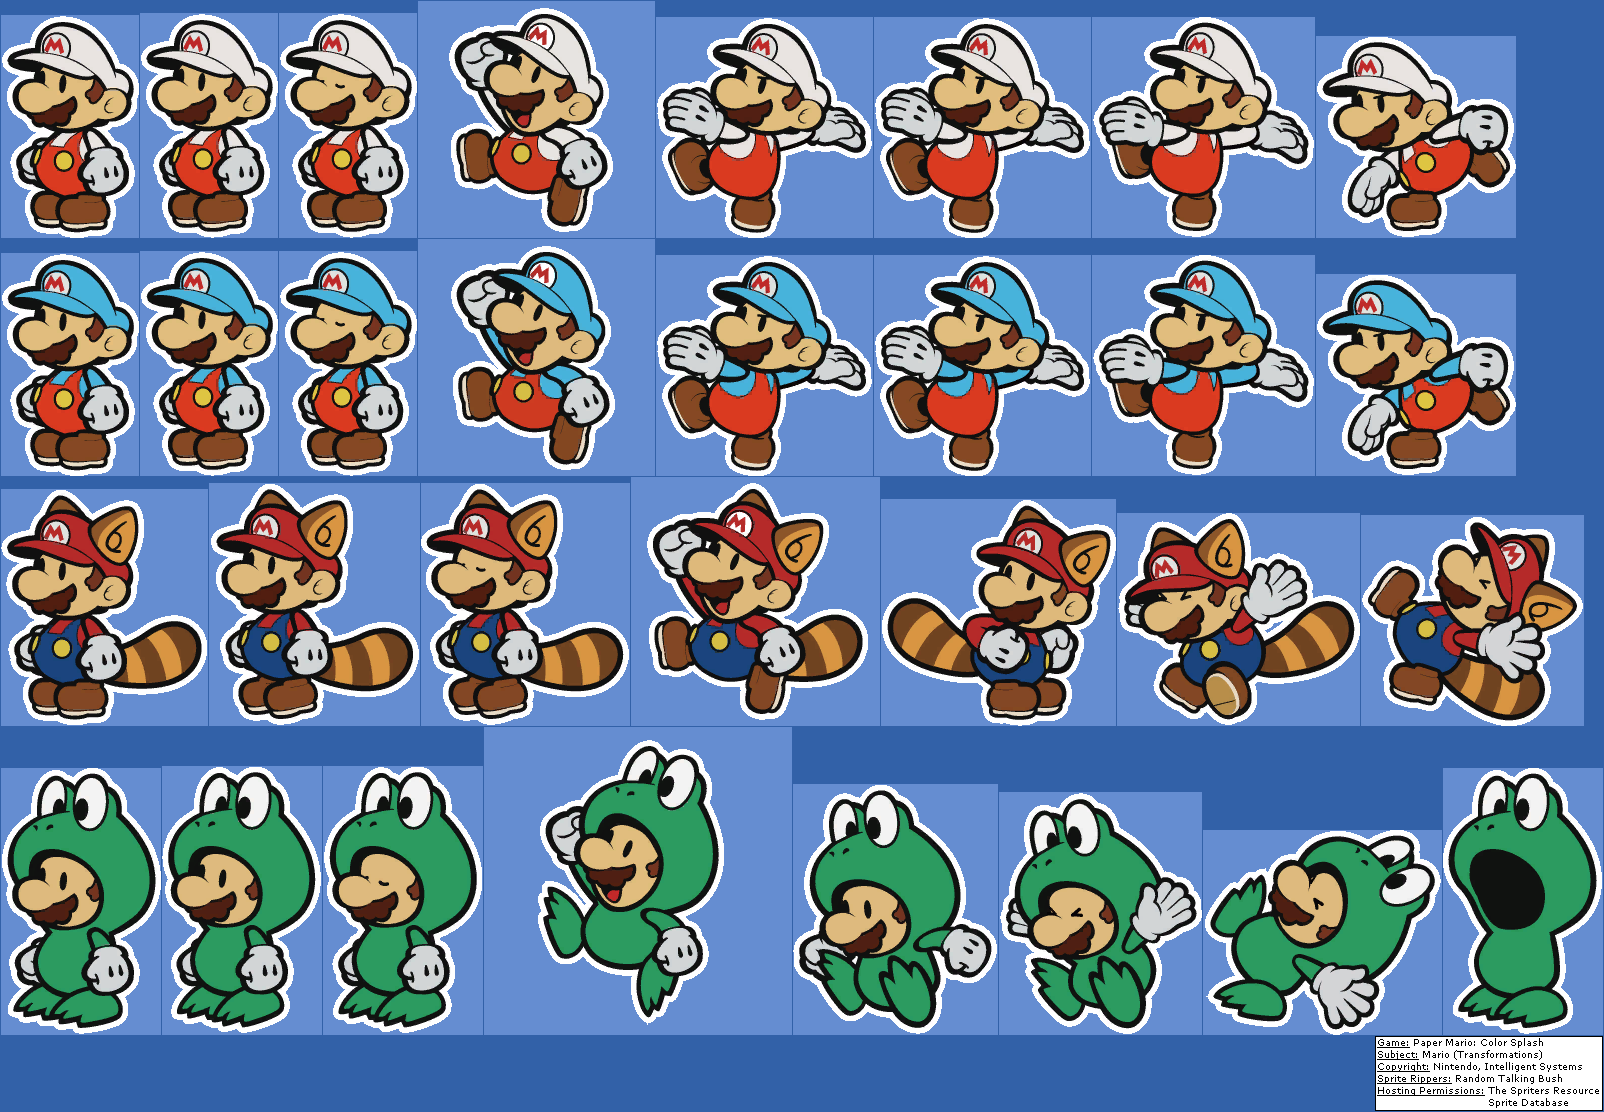 Mario (Transformations)